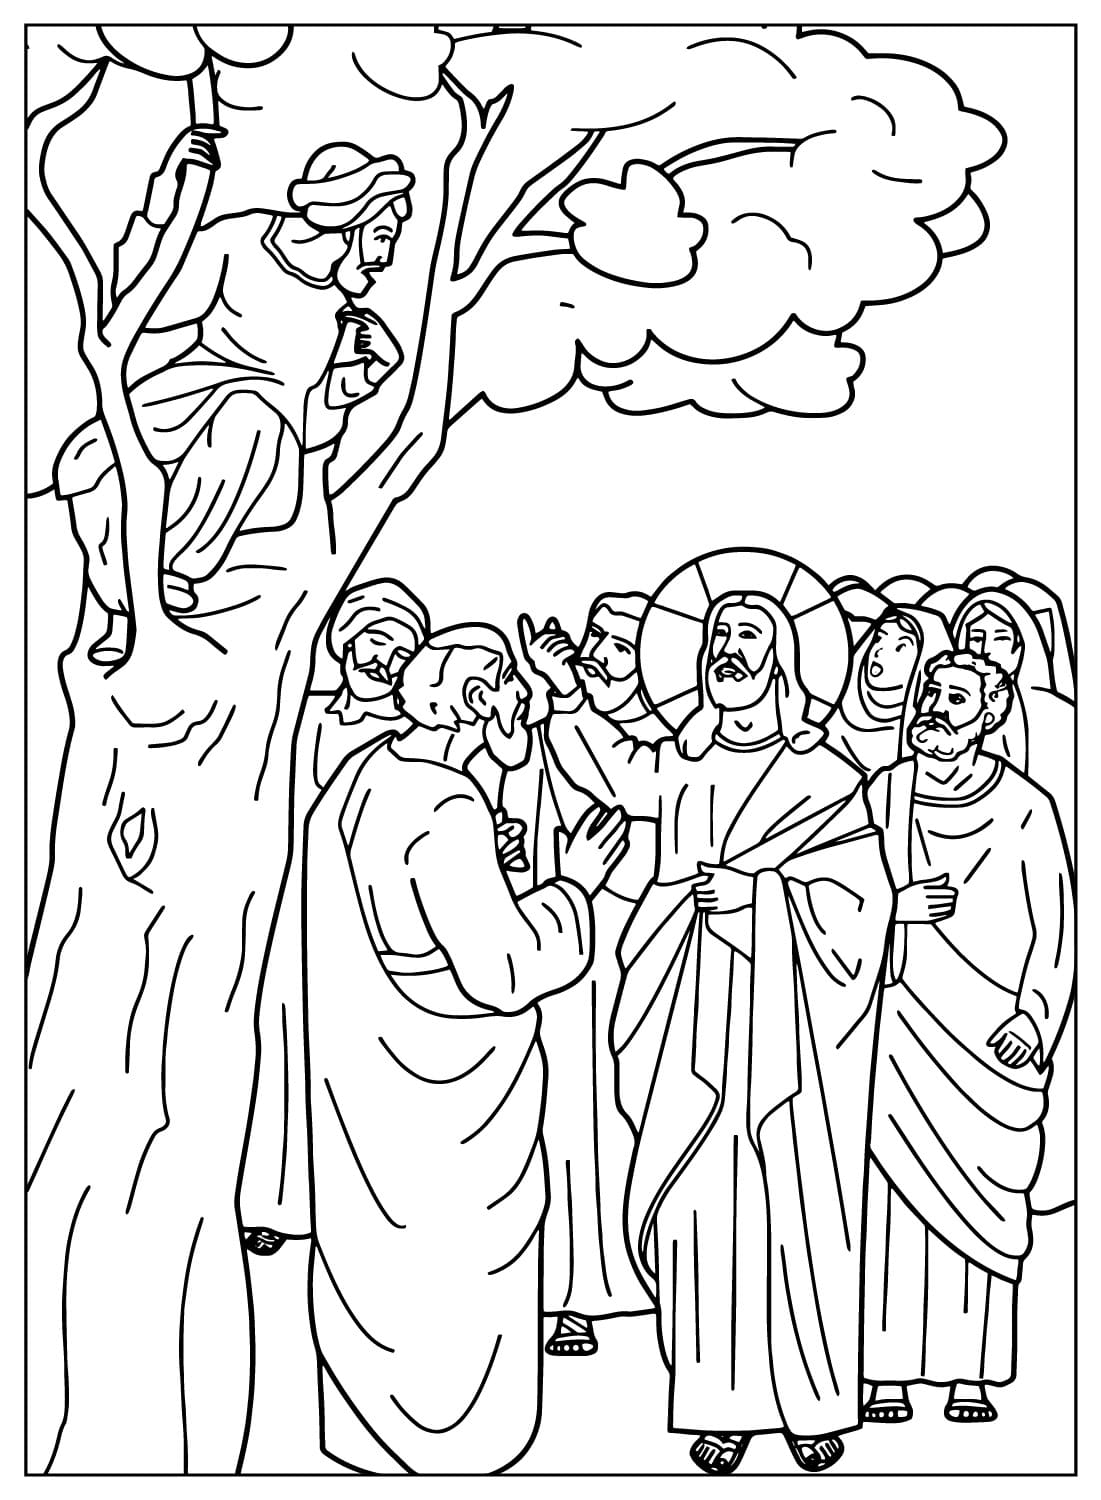 Zaches zit in een boom terwijl Jezus met hem praat